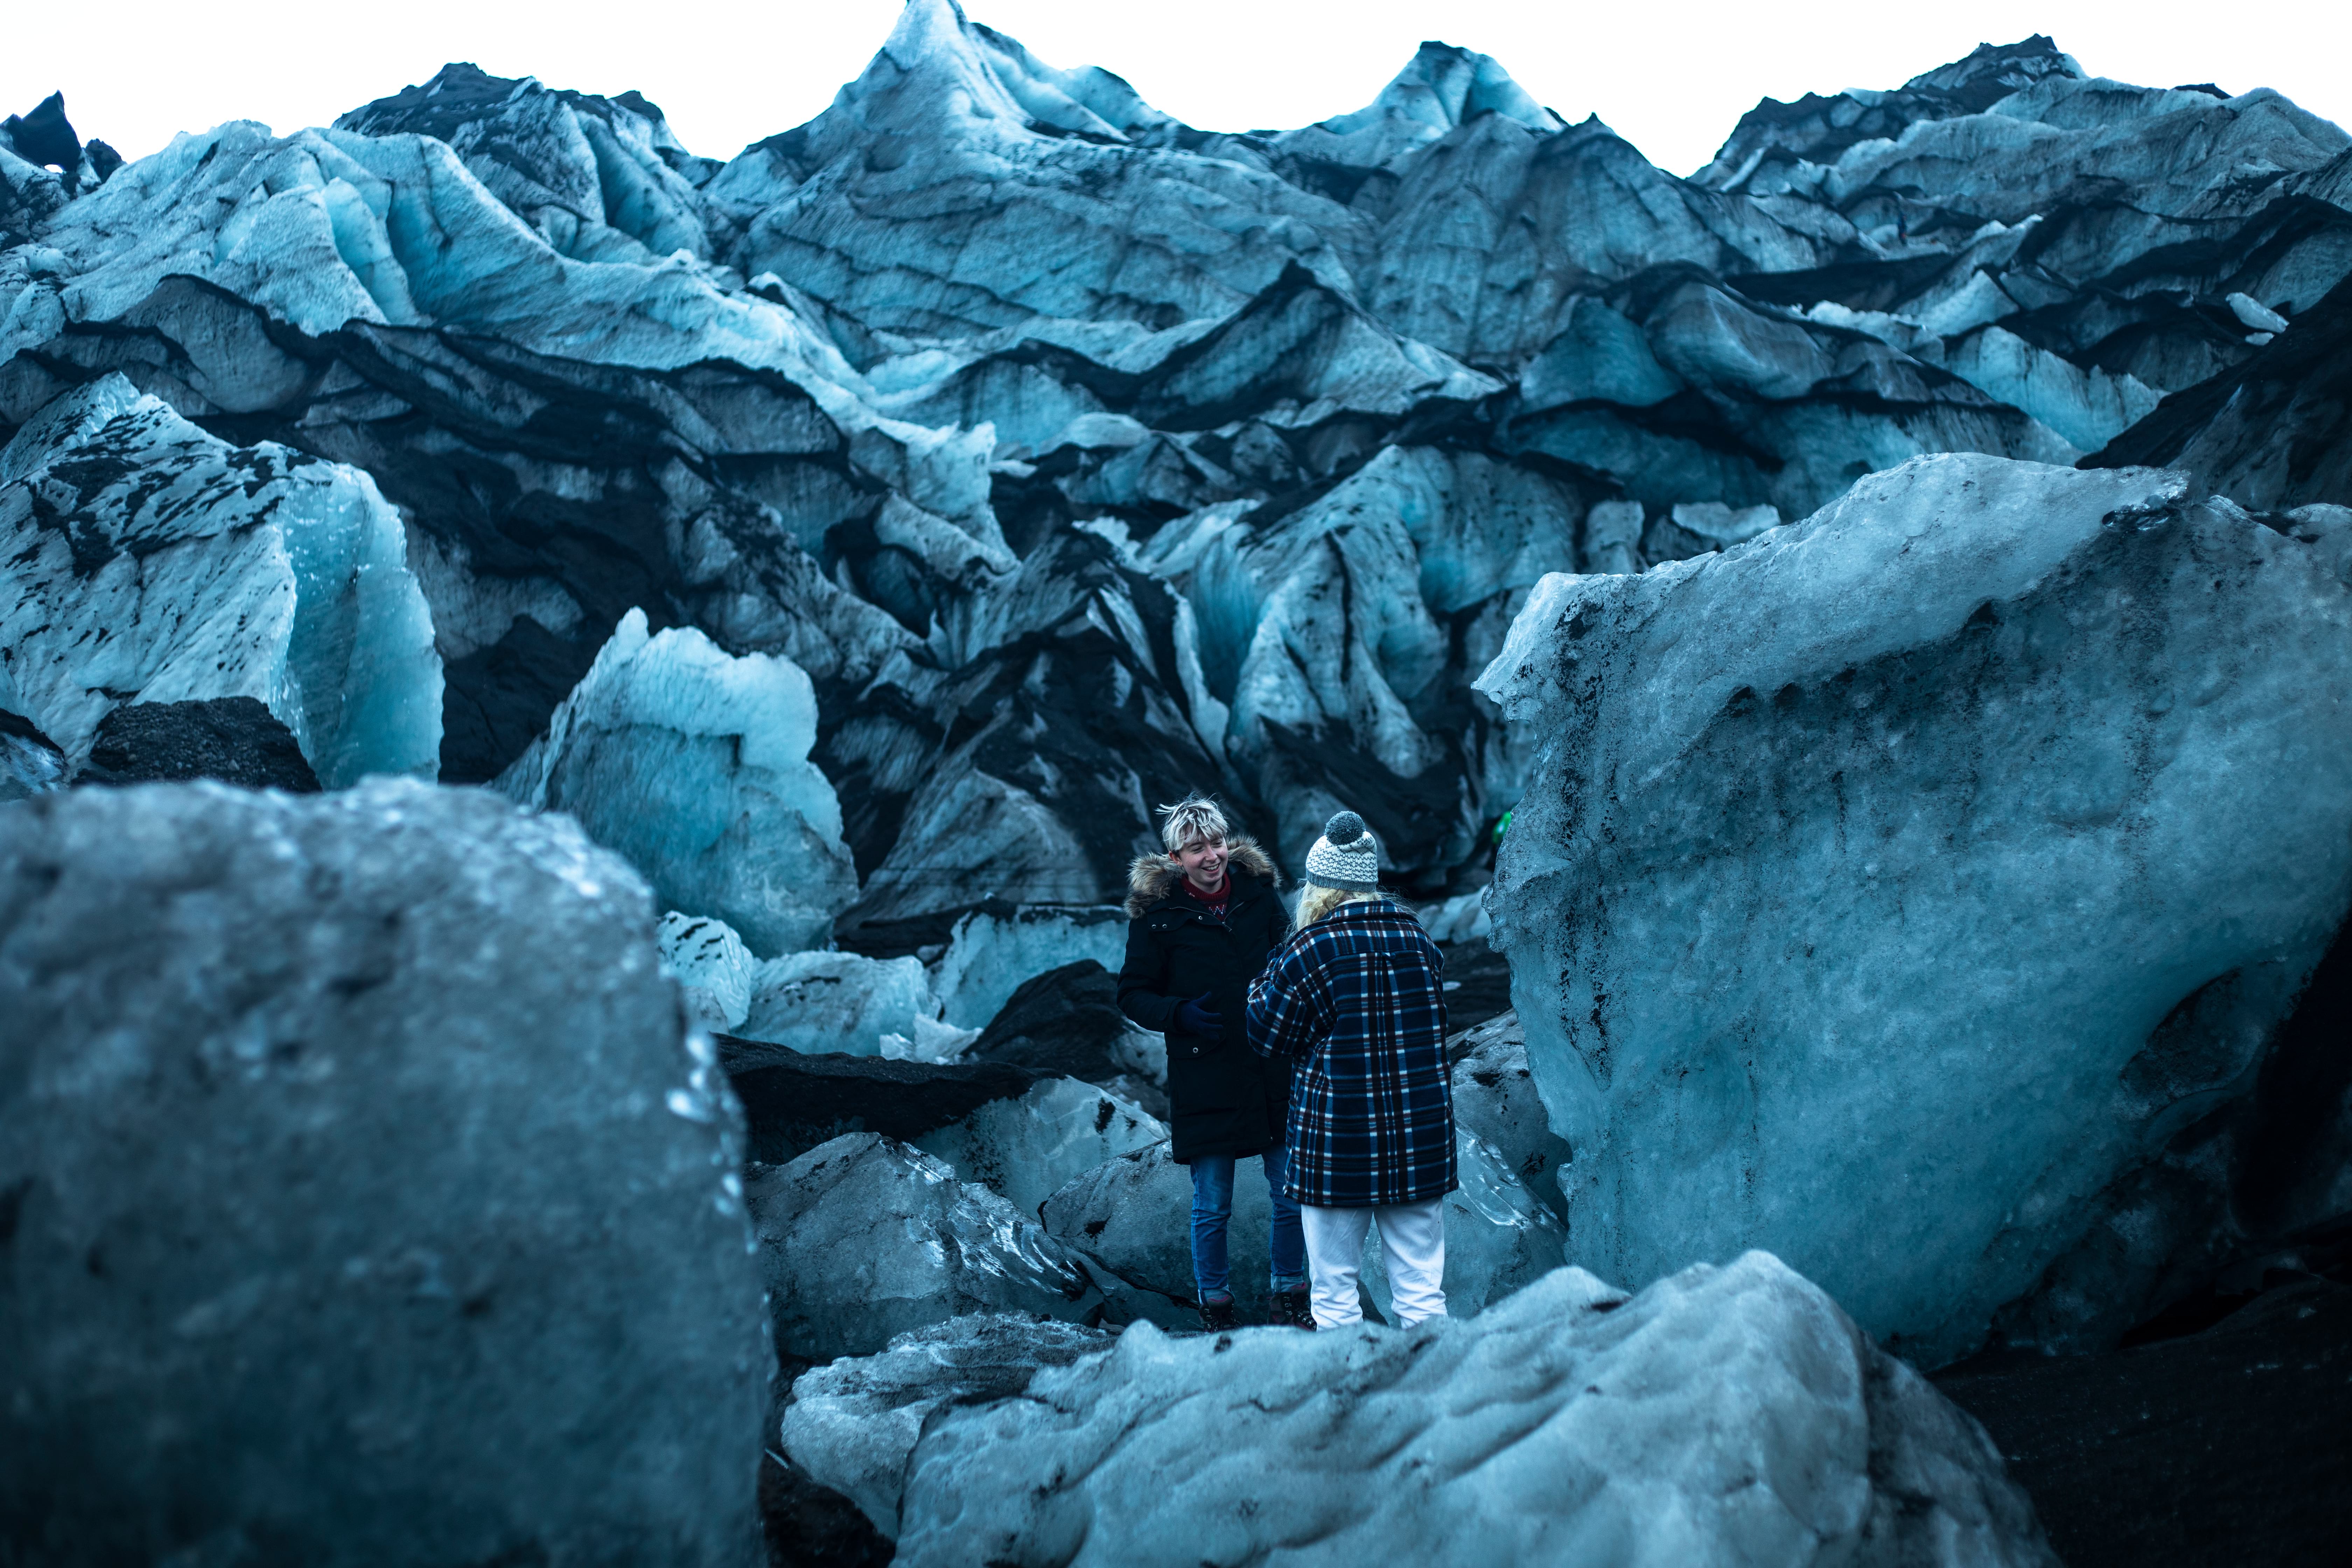 Kids will find Sólheimajökull glacier fascinating 